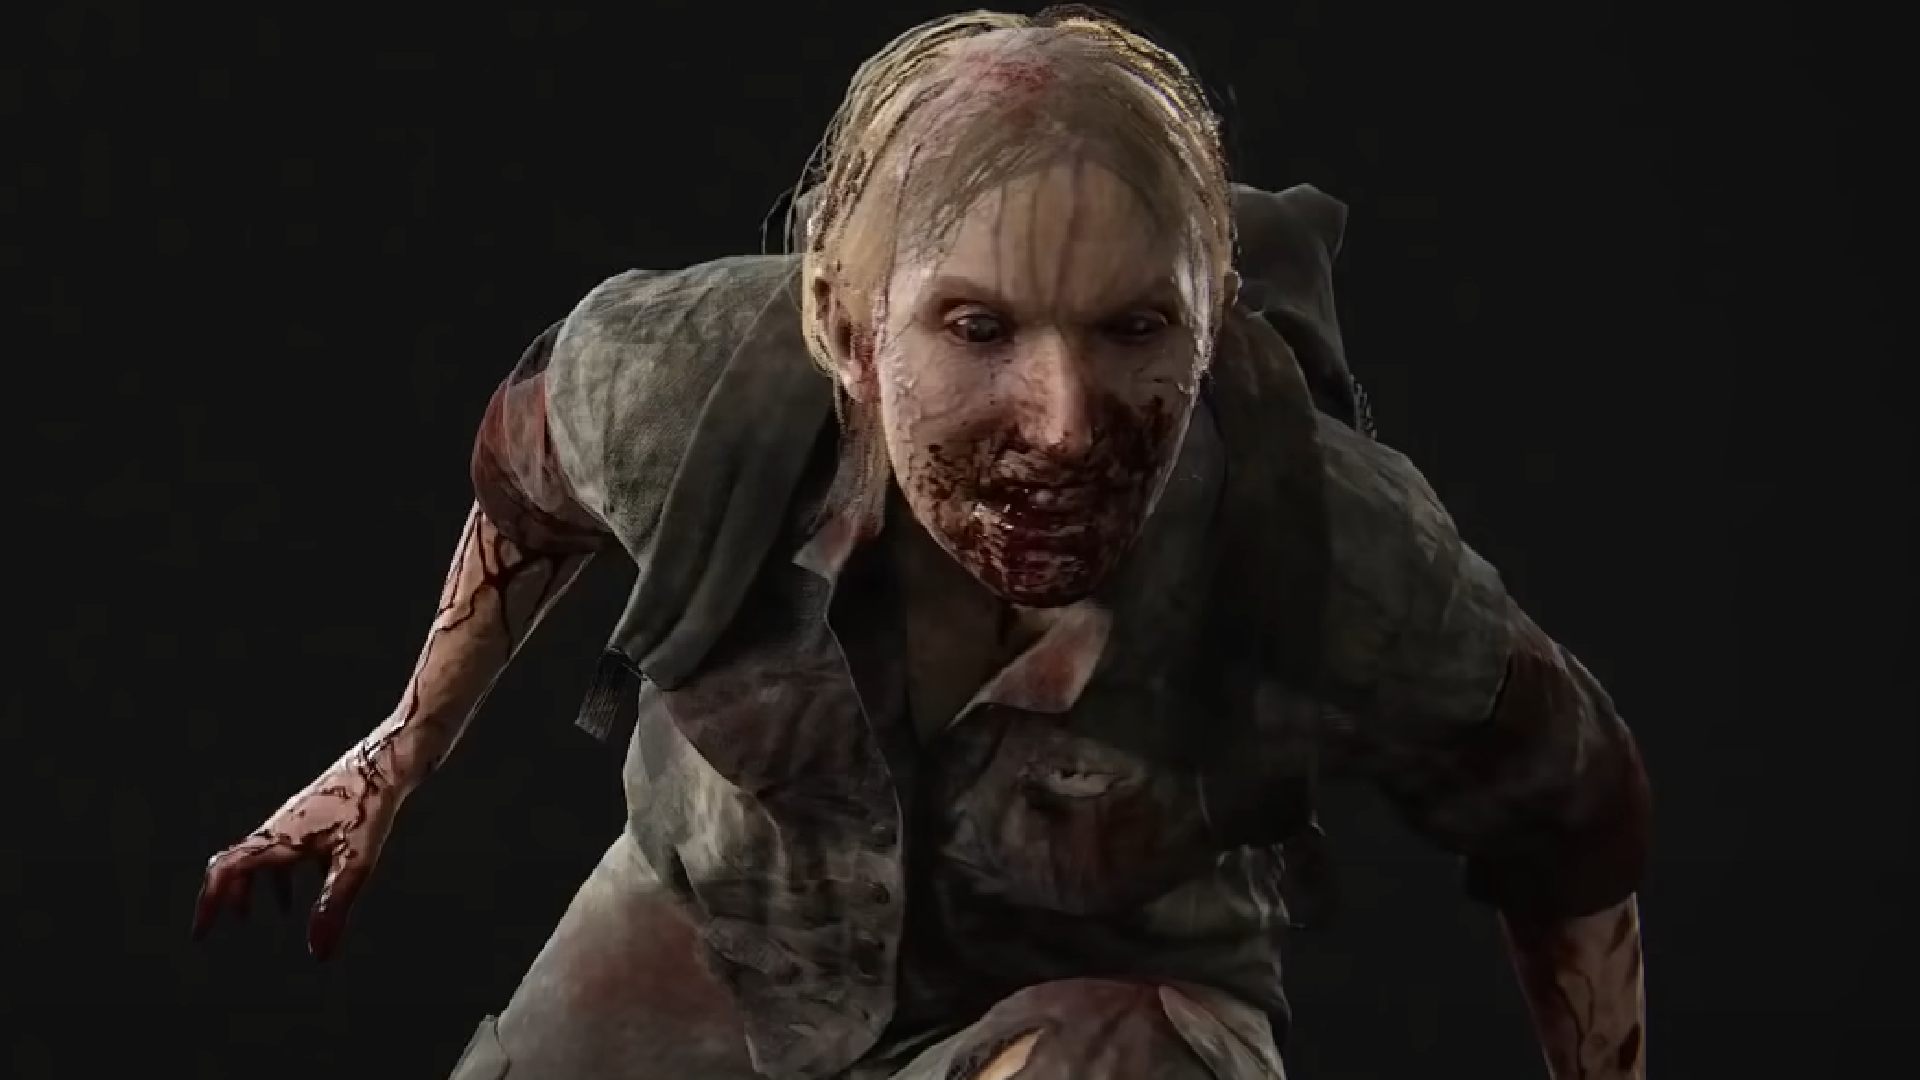 Ellie - tlou part 2, game, horror, last, ps4, the, us, zombie, HD